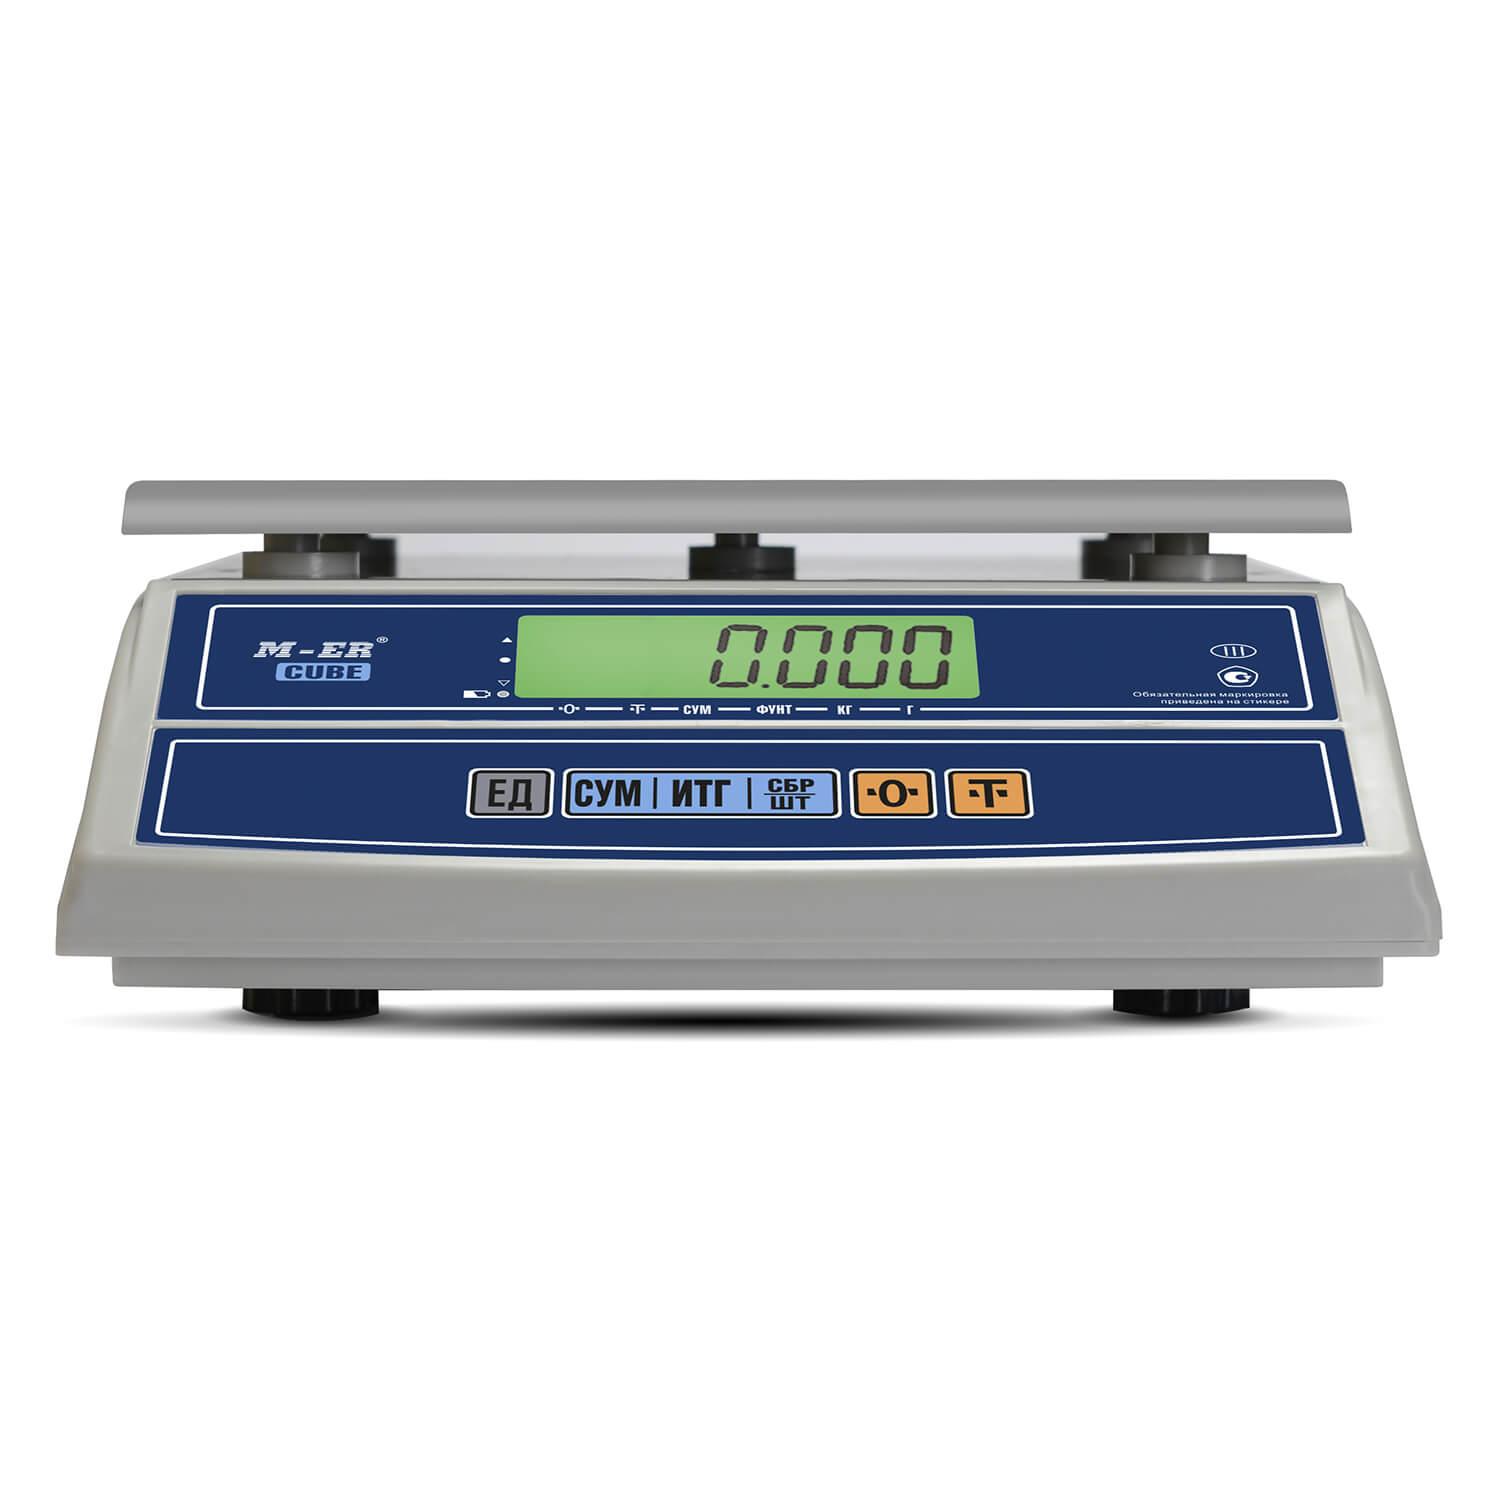 Фасовочные настольные весы M-ER 326 AF-15.2 "Cube" LCD USB (3149)